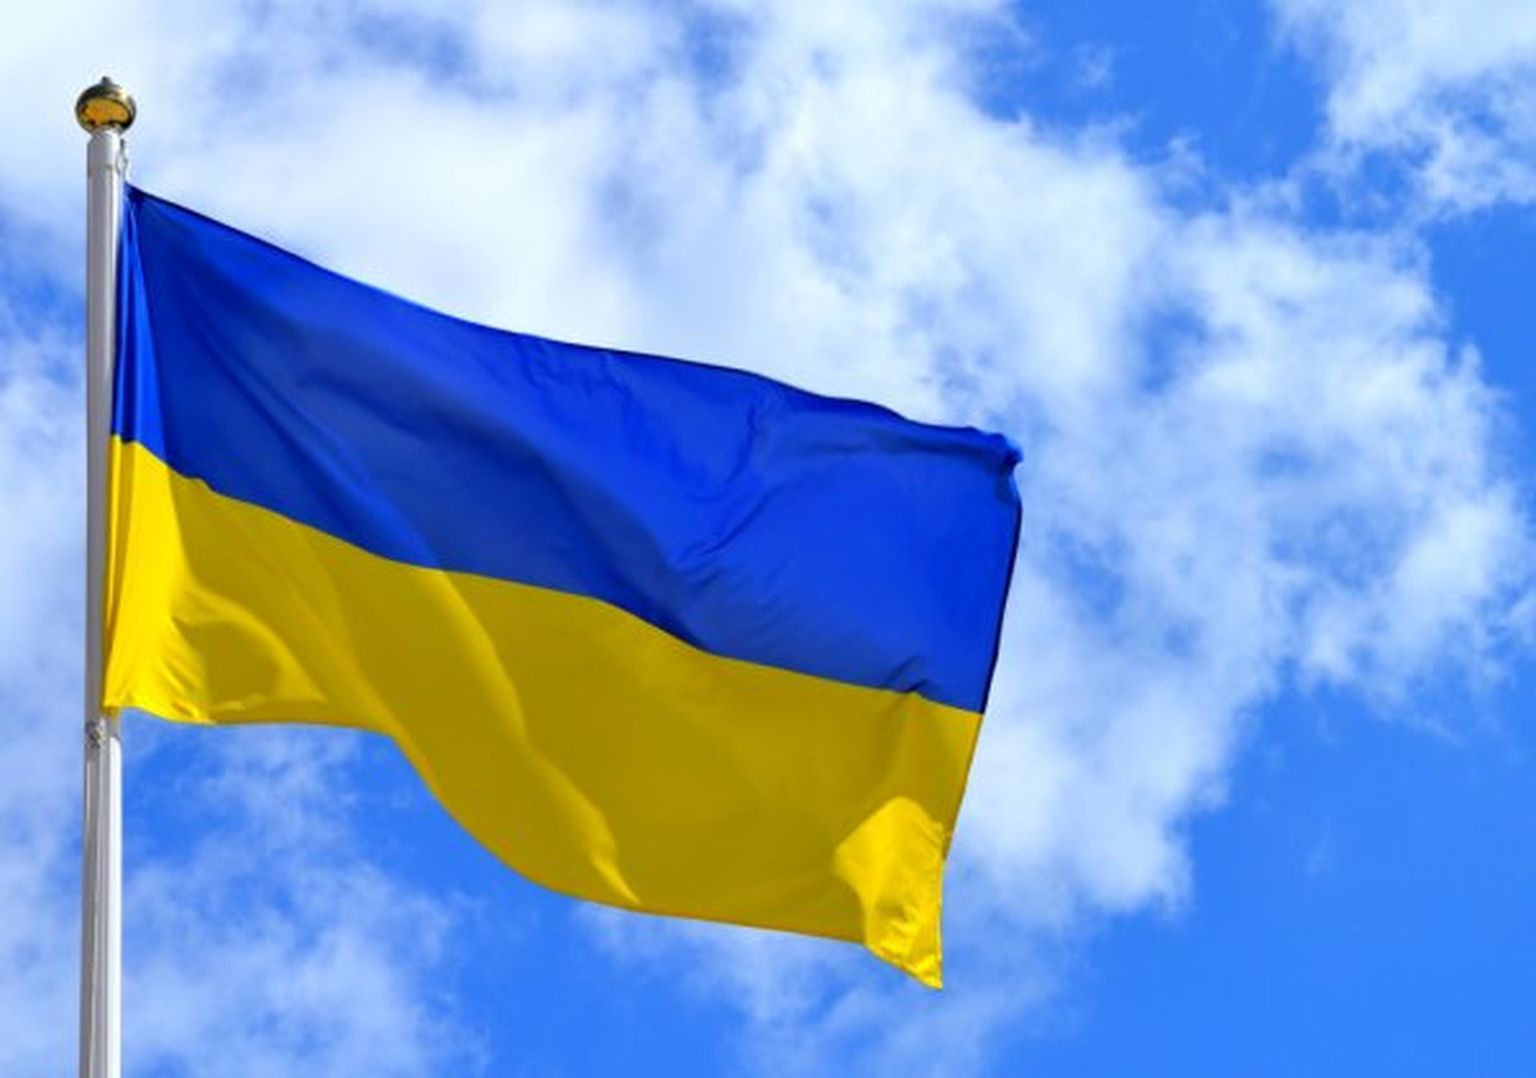 Флаг Украины.